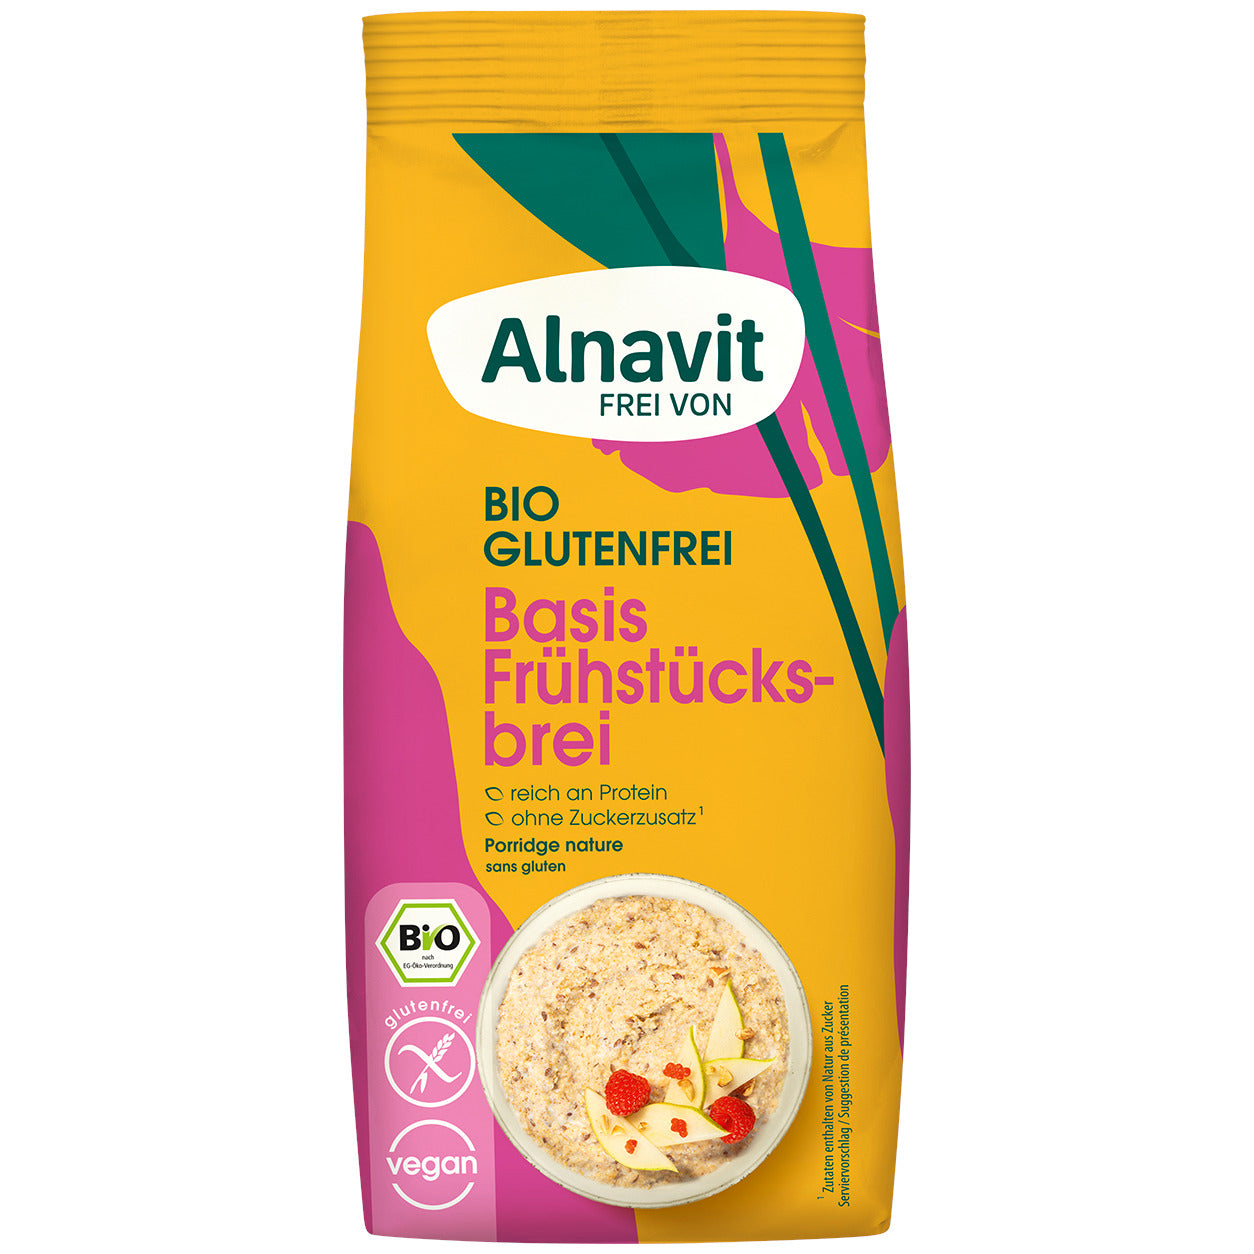 Alnavit_Basis_Frühstücksbrei